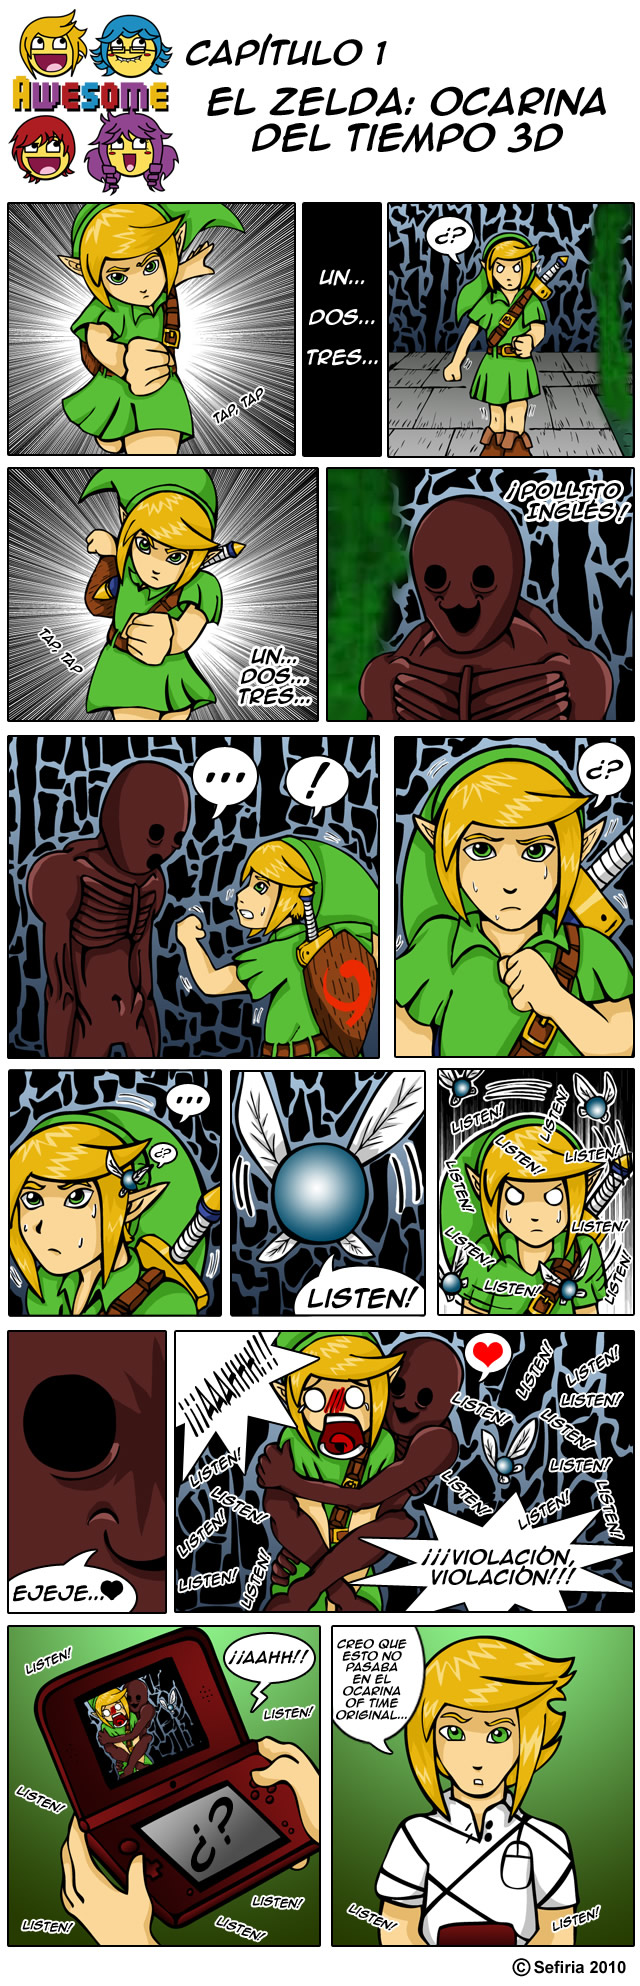 Awesome 2 - El Zelda: Ocarina del Tiempo 3D